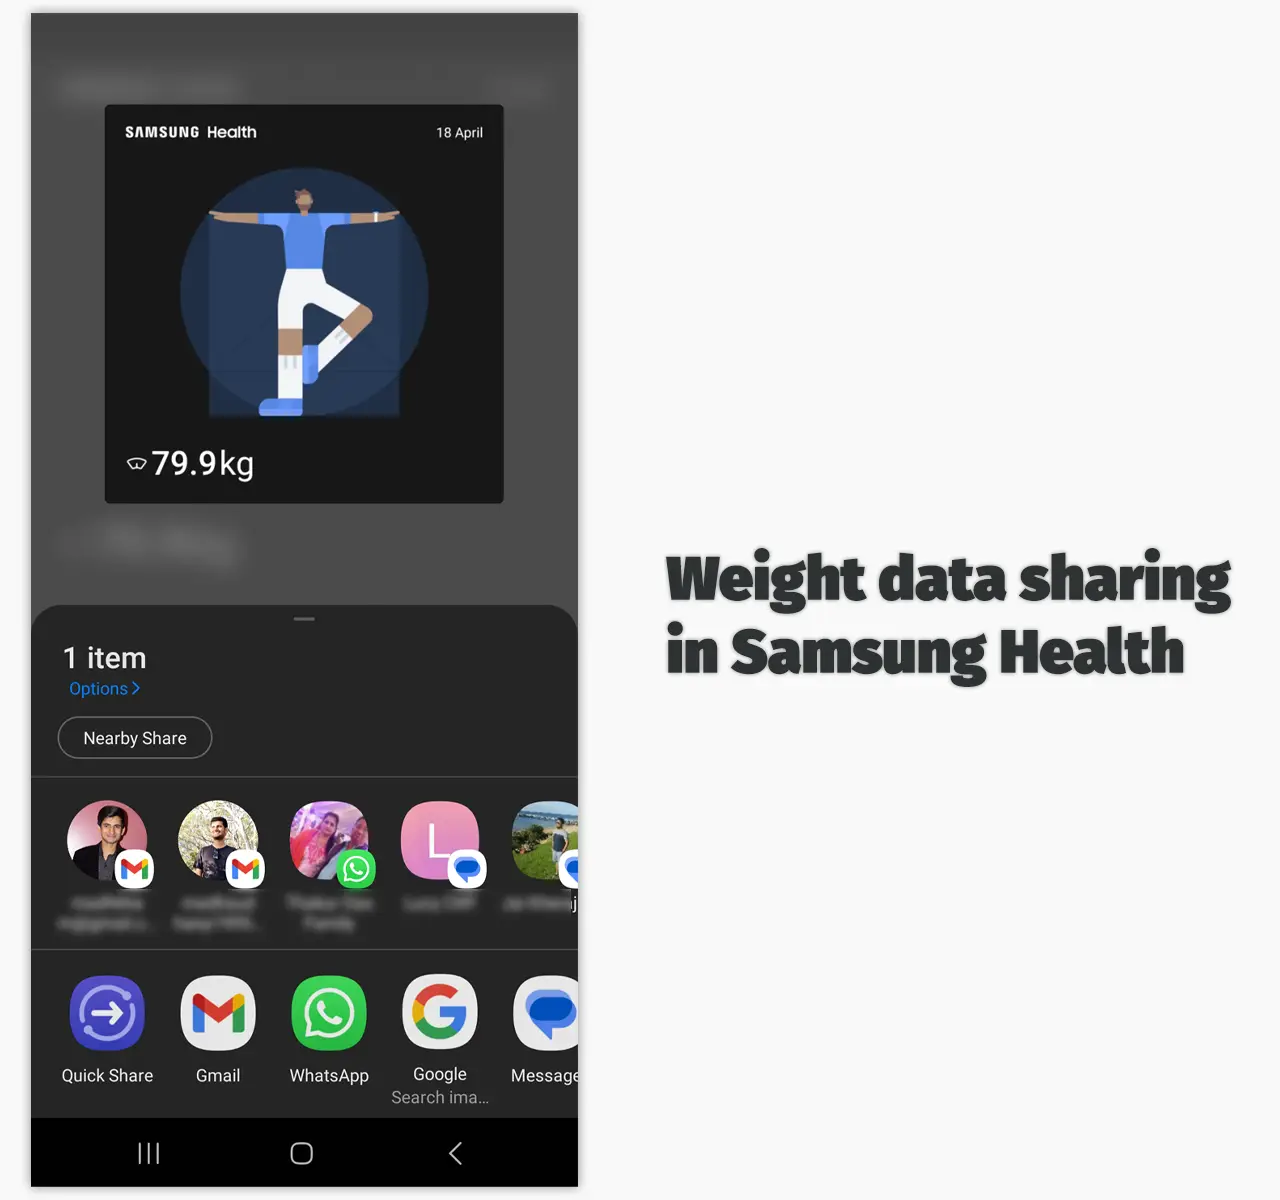 Weight data sharing in Samsung Health